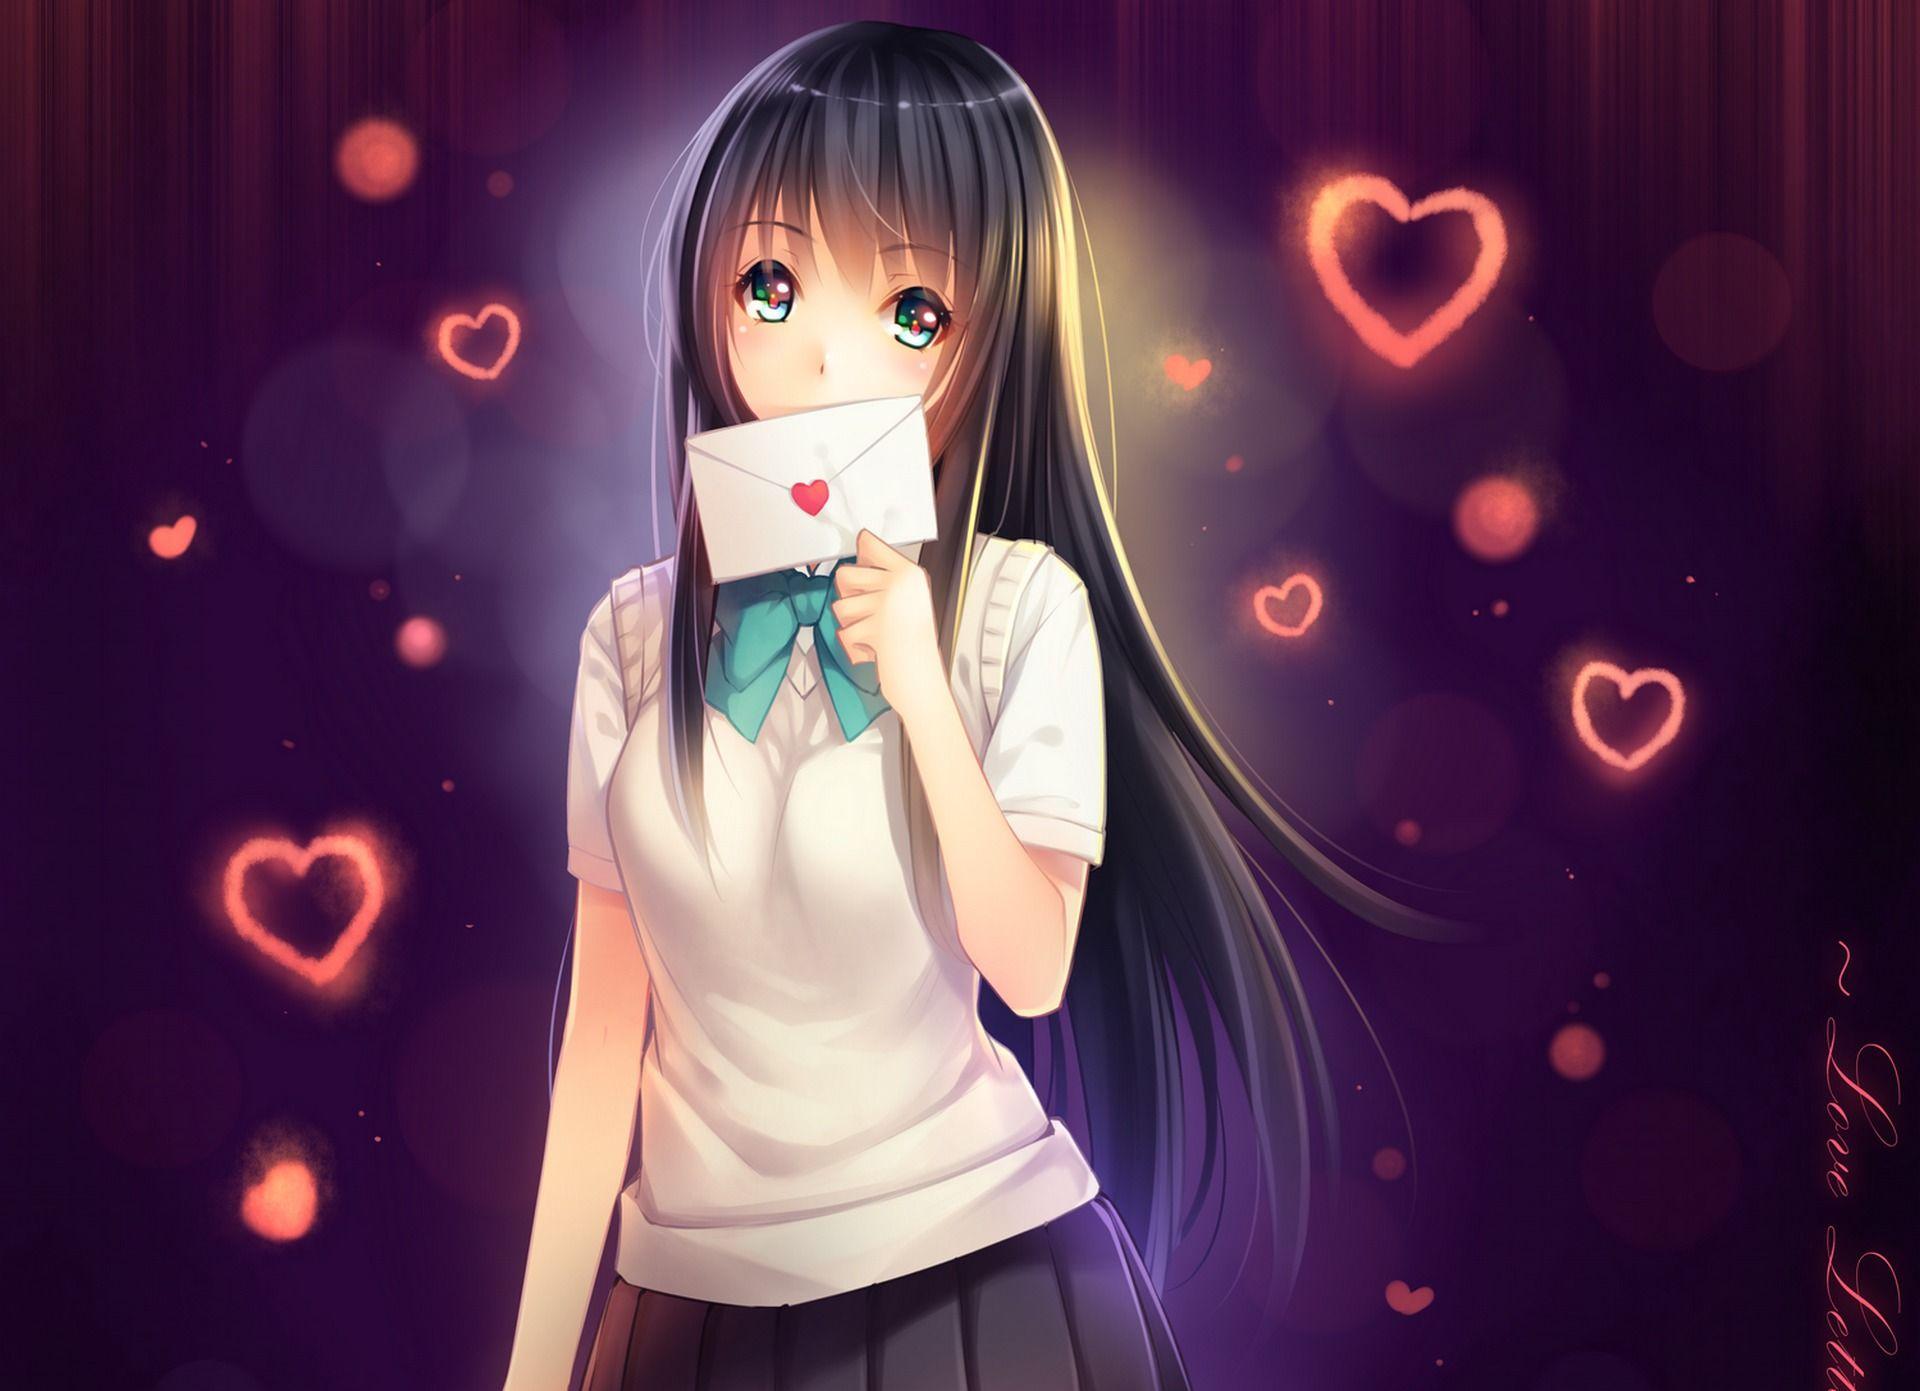 Heart Anime Wallpaper Free Heart Anime Background